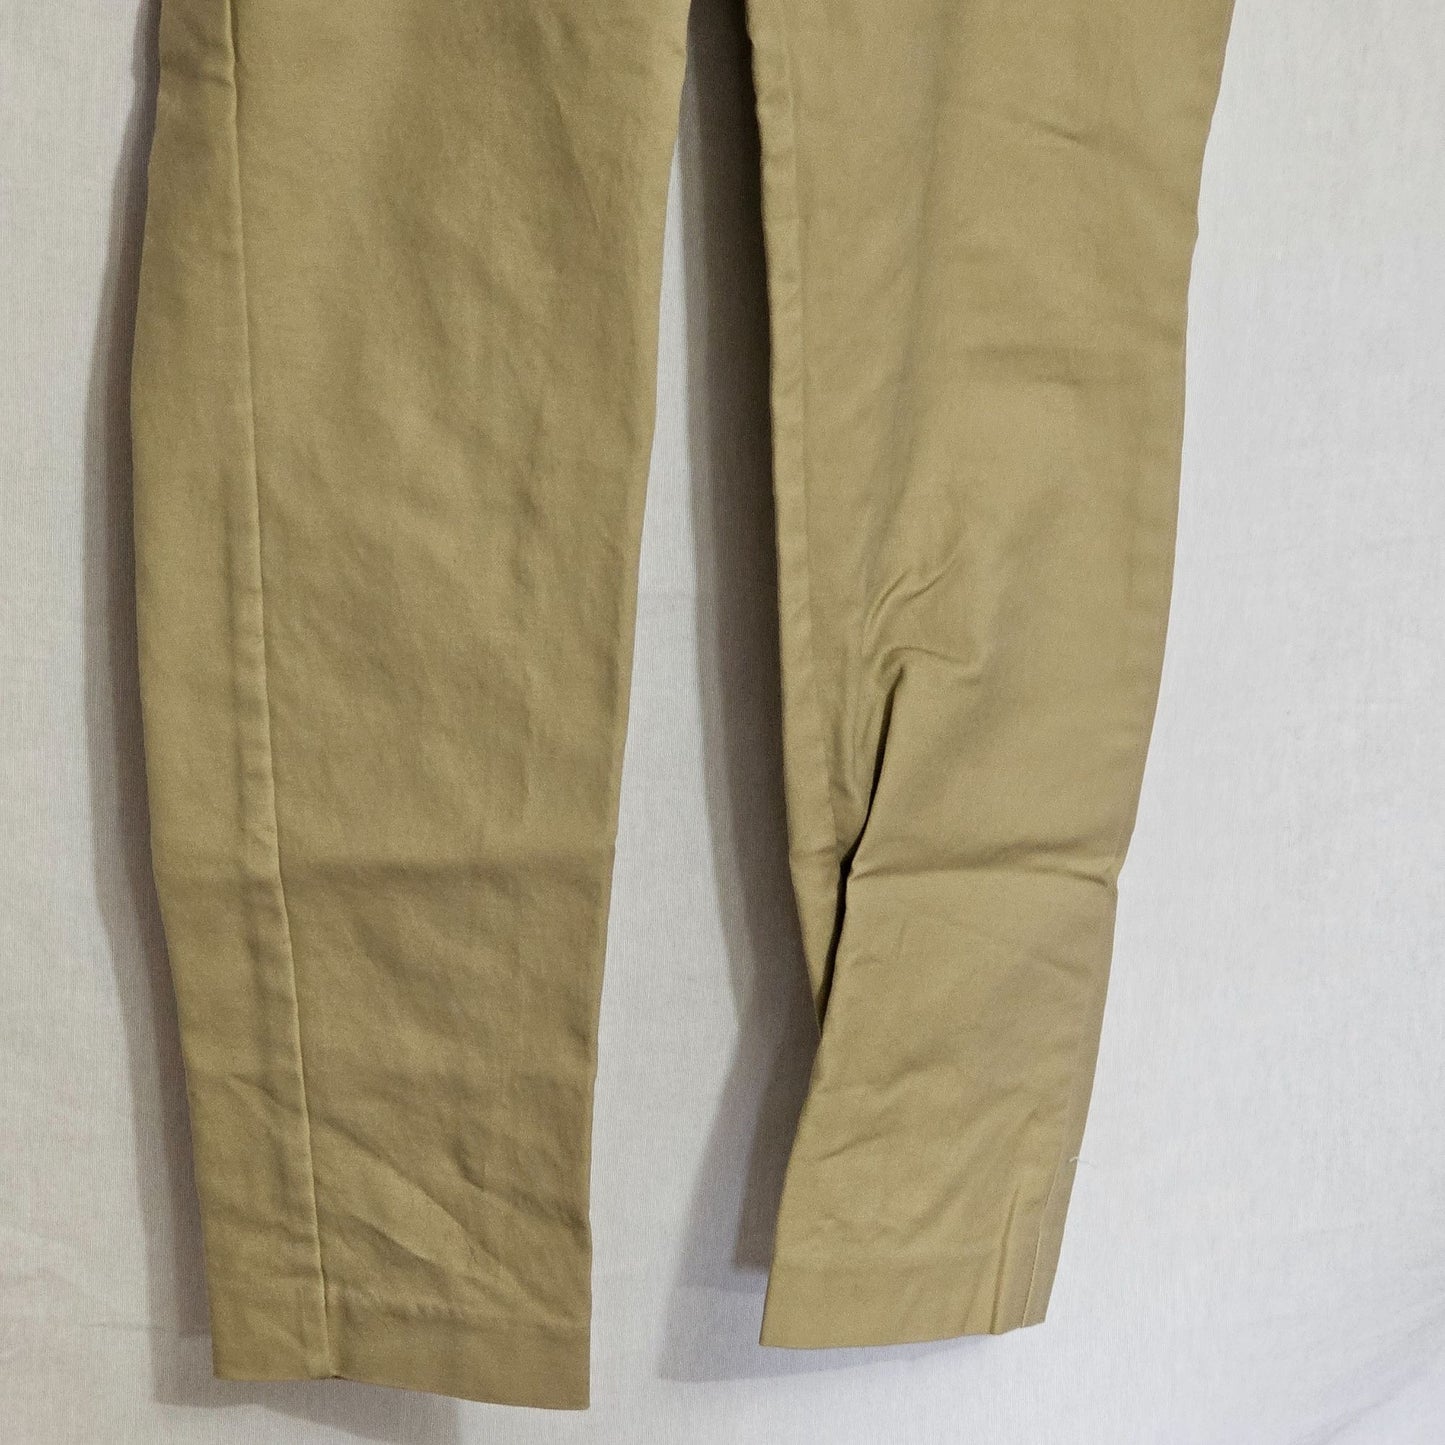 Michael Kors Khaki Taper Leg Dress Pants Size 4